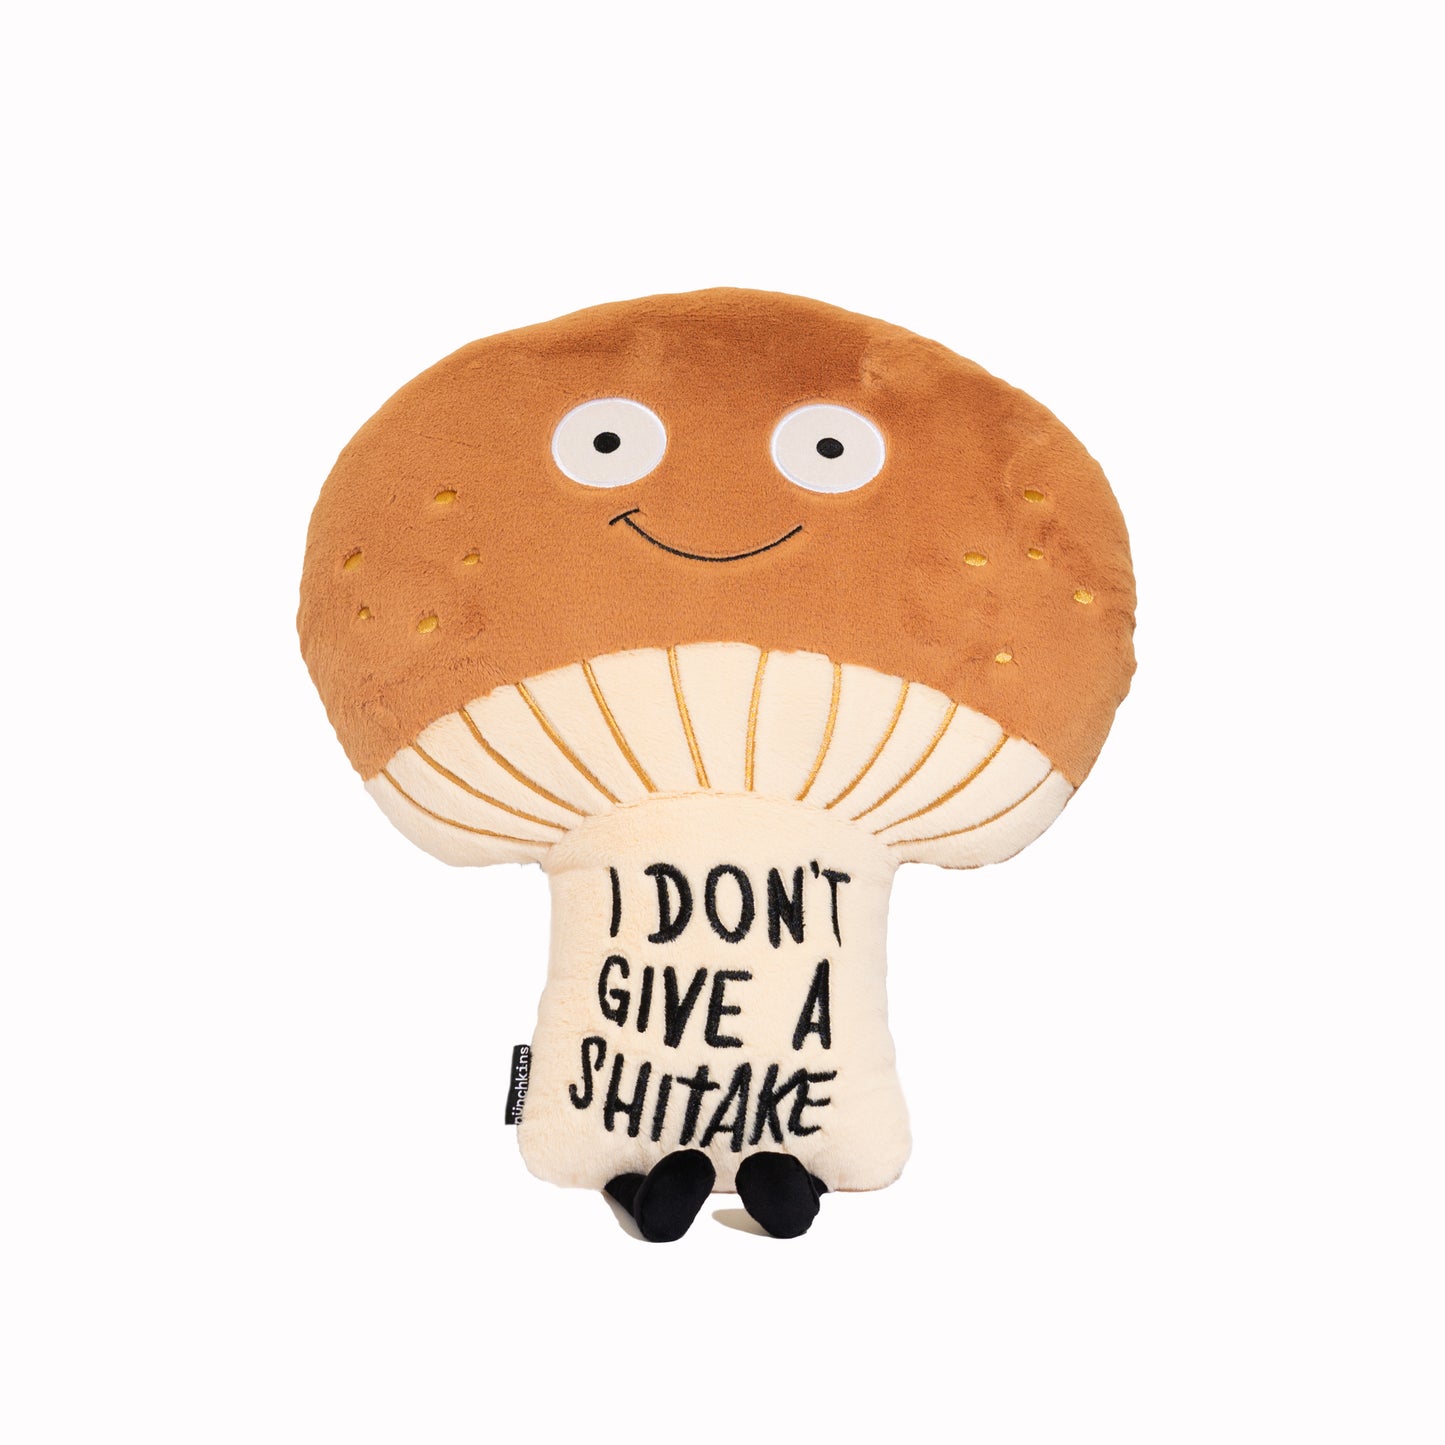 "I Don't Give A Shitake" Mushroom Plush Pillow